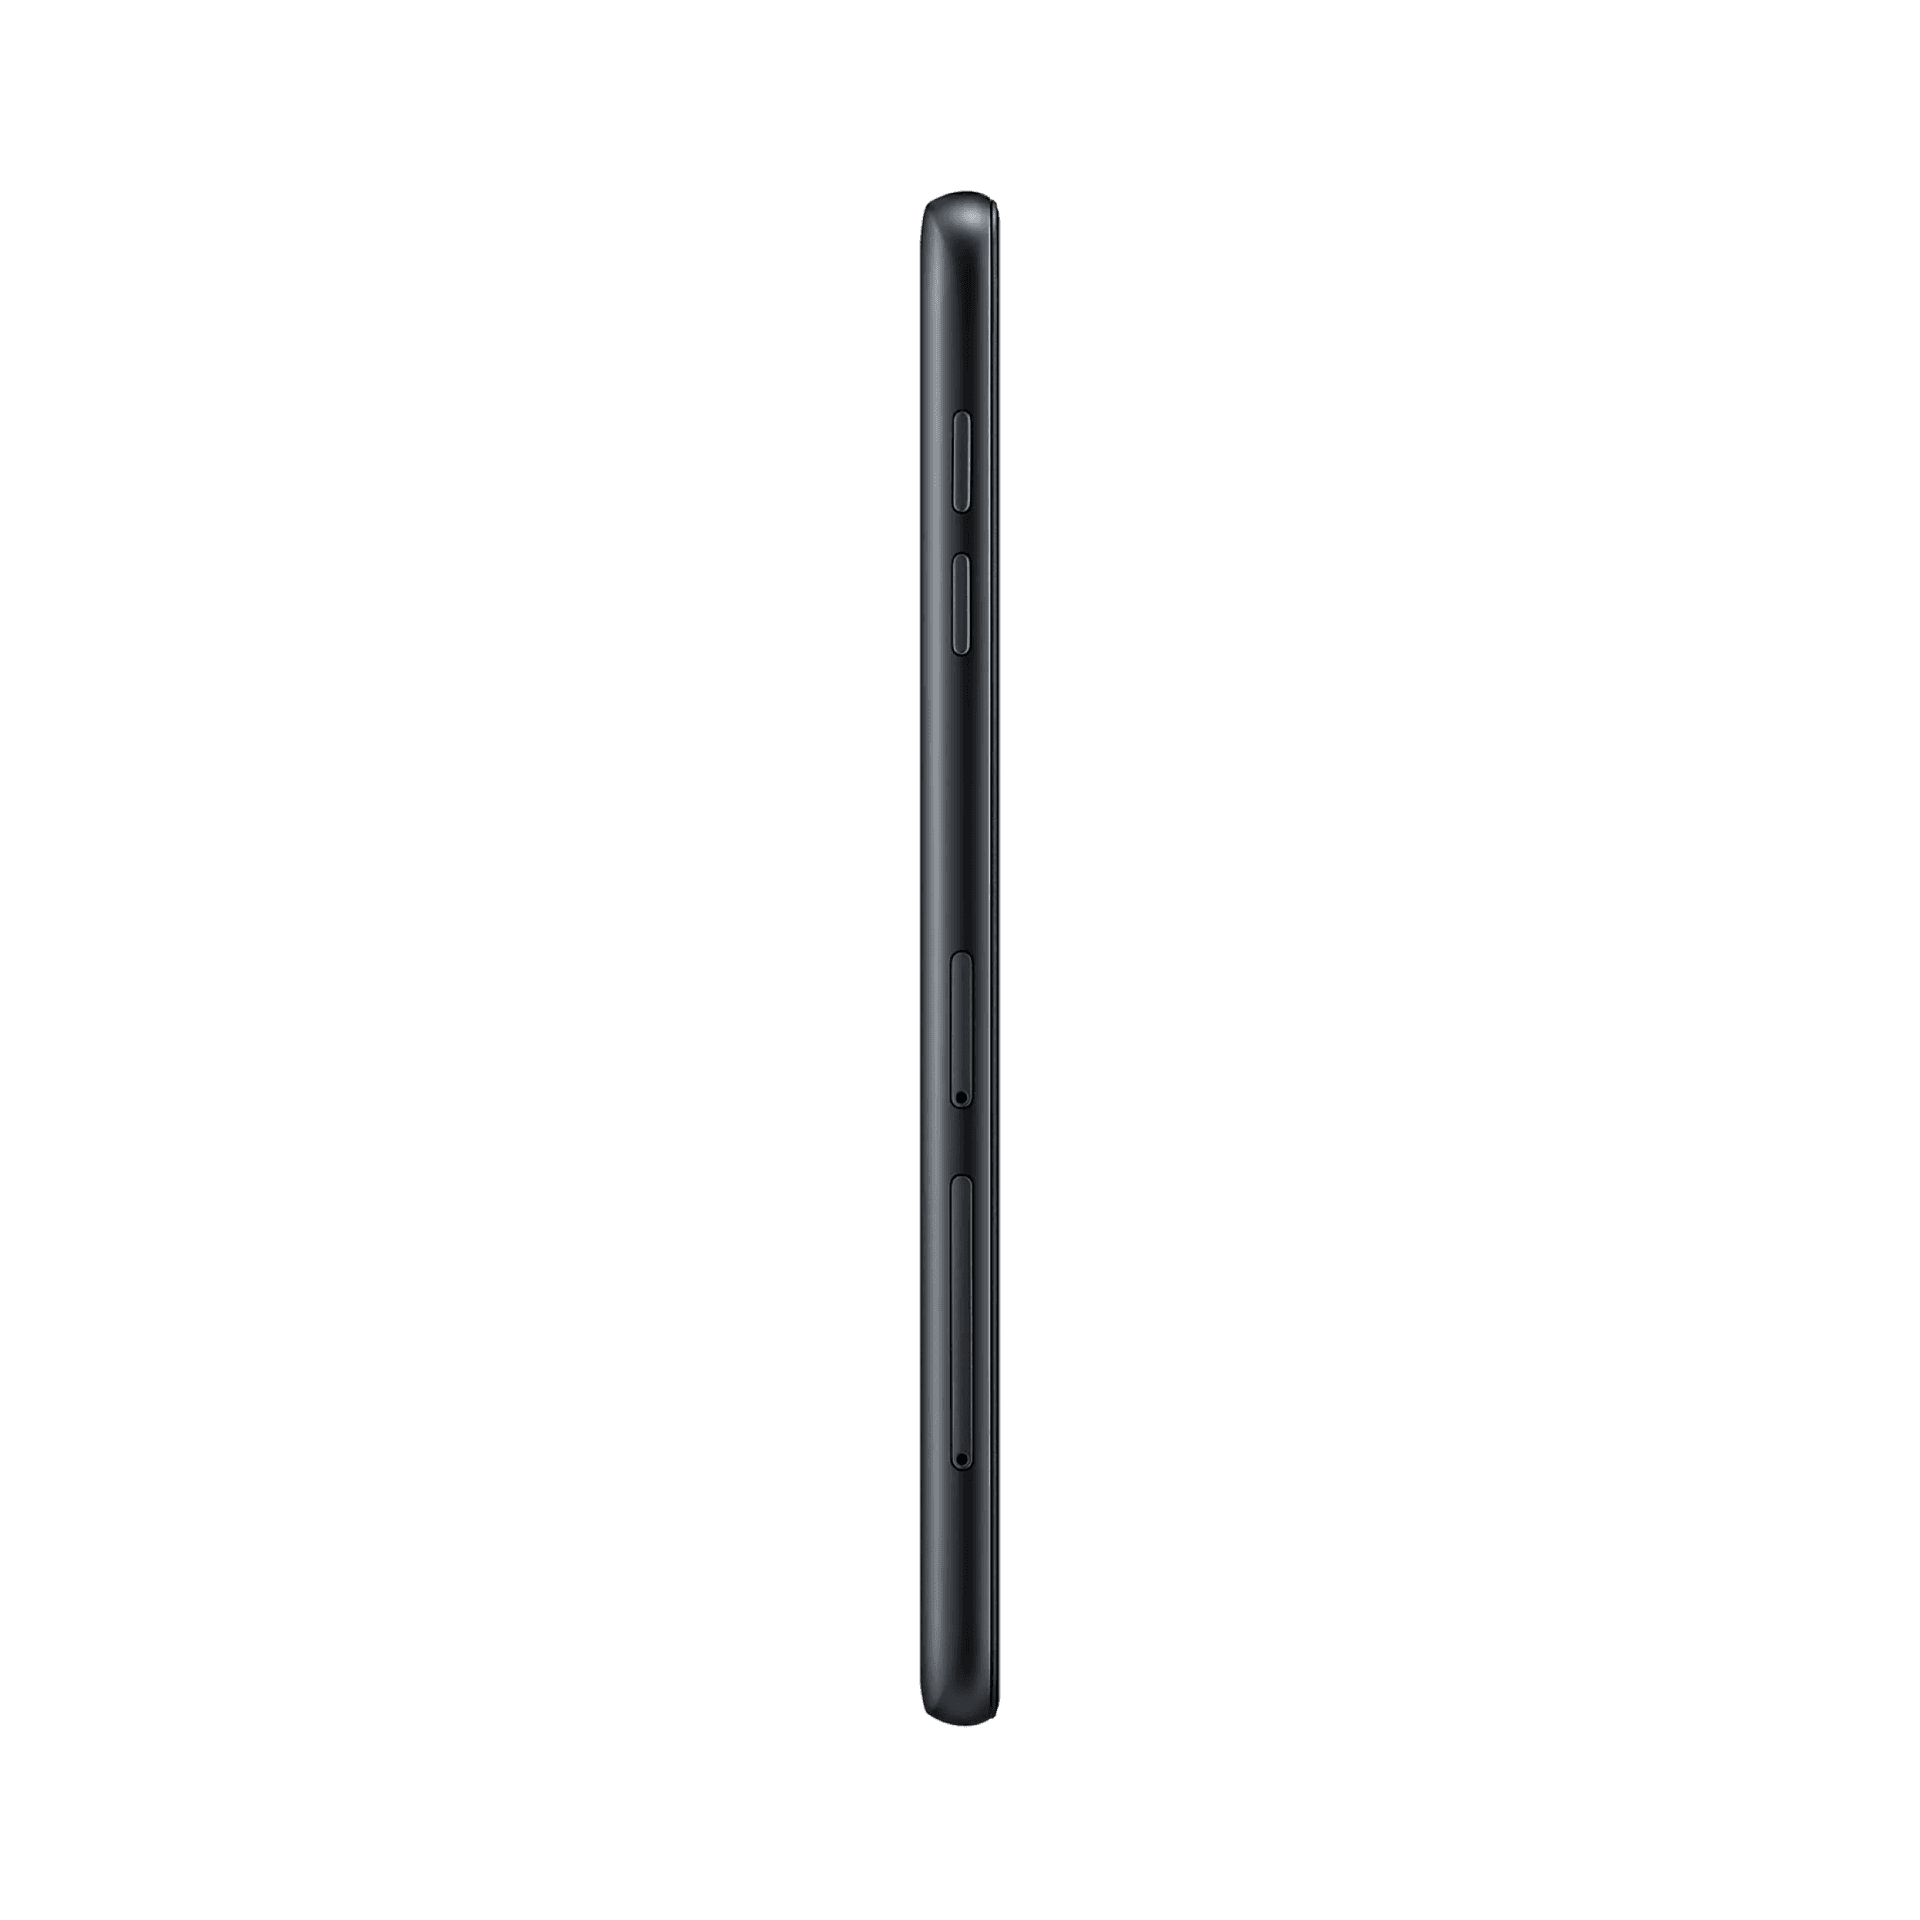 Samsung Galaxy J7 Pro - 32 GB - Siyah